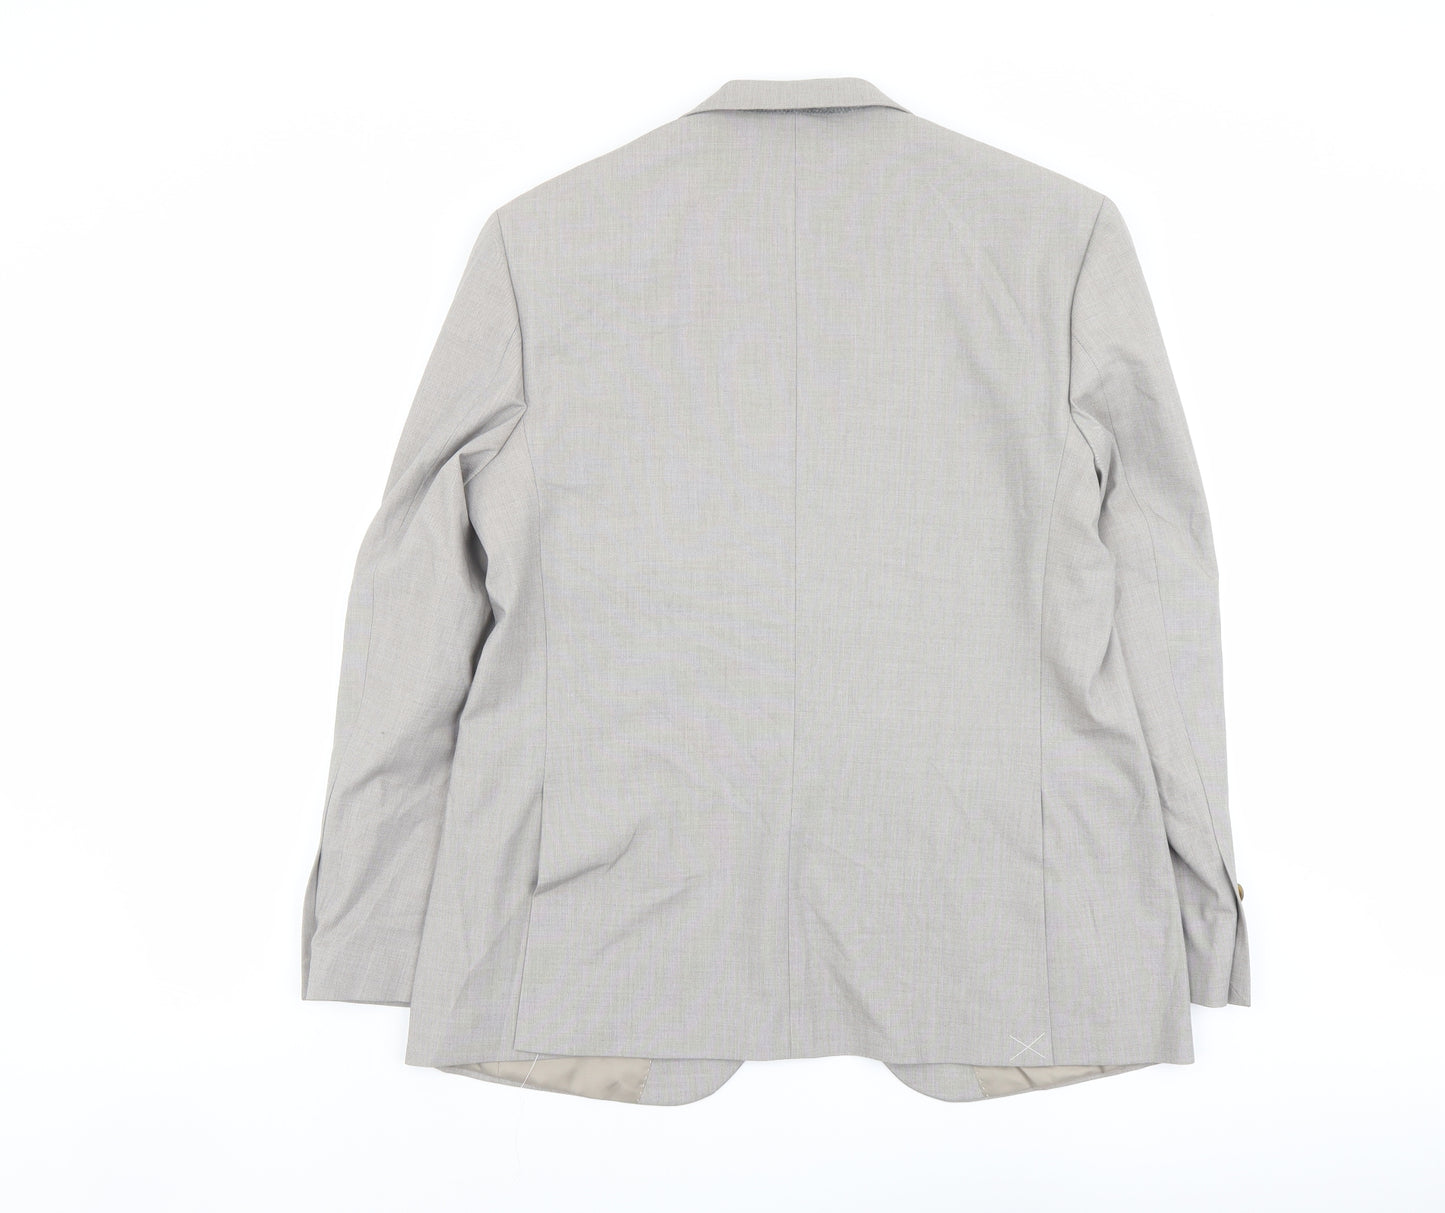 Marks and Spencer Mens Ivory Polyester Jacket Suit Jacket Size 42 Regular